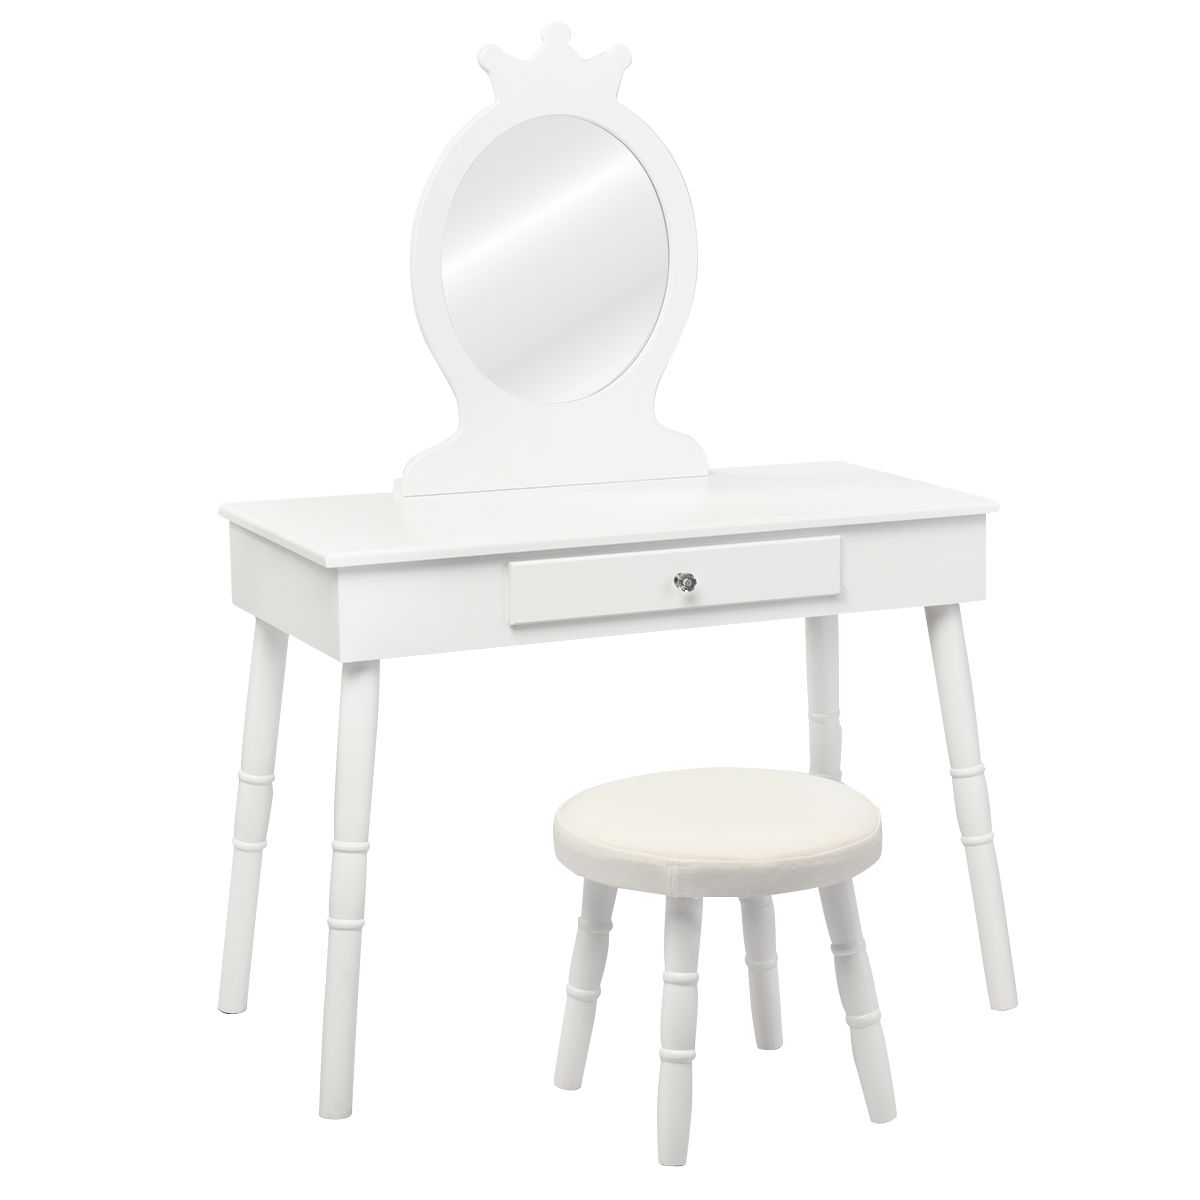 Detský toaletný stolík so zrkadlom, biely